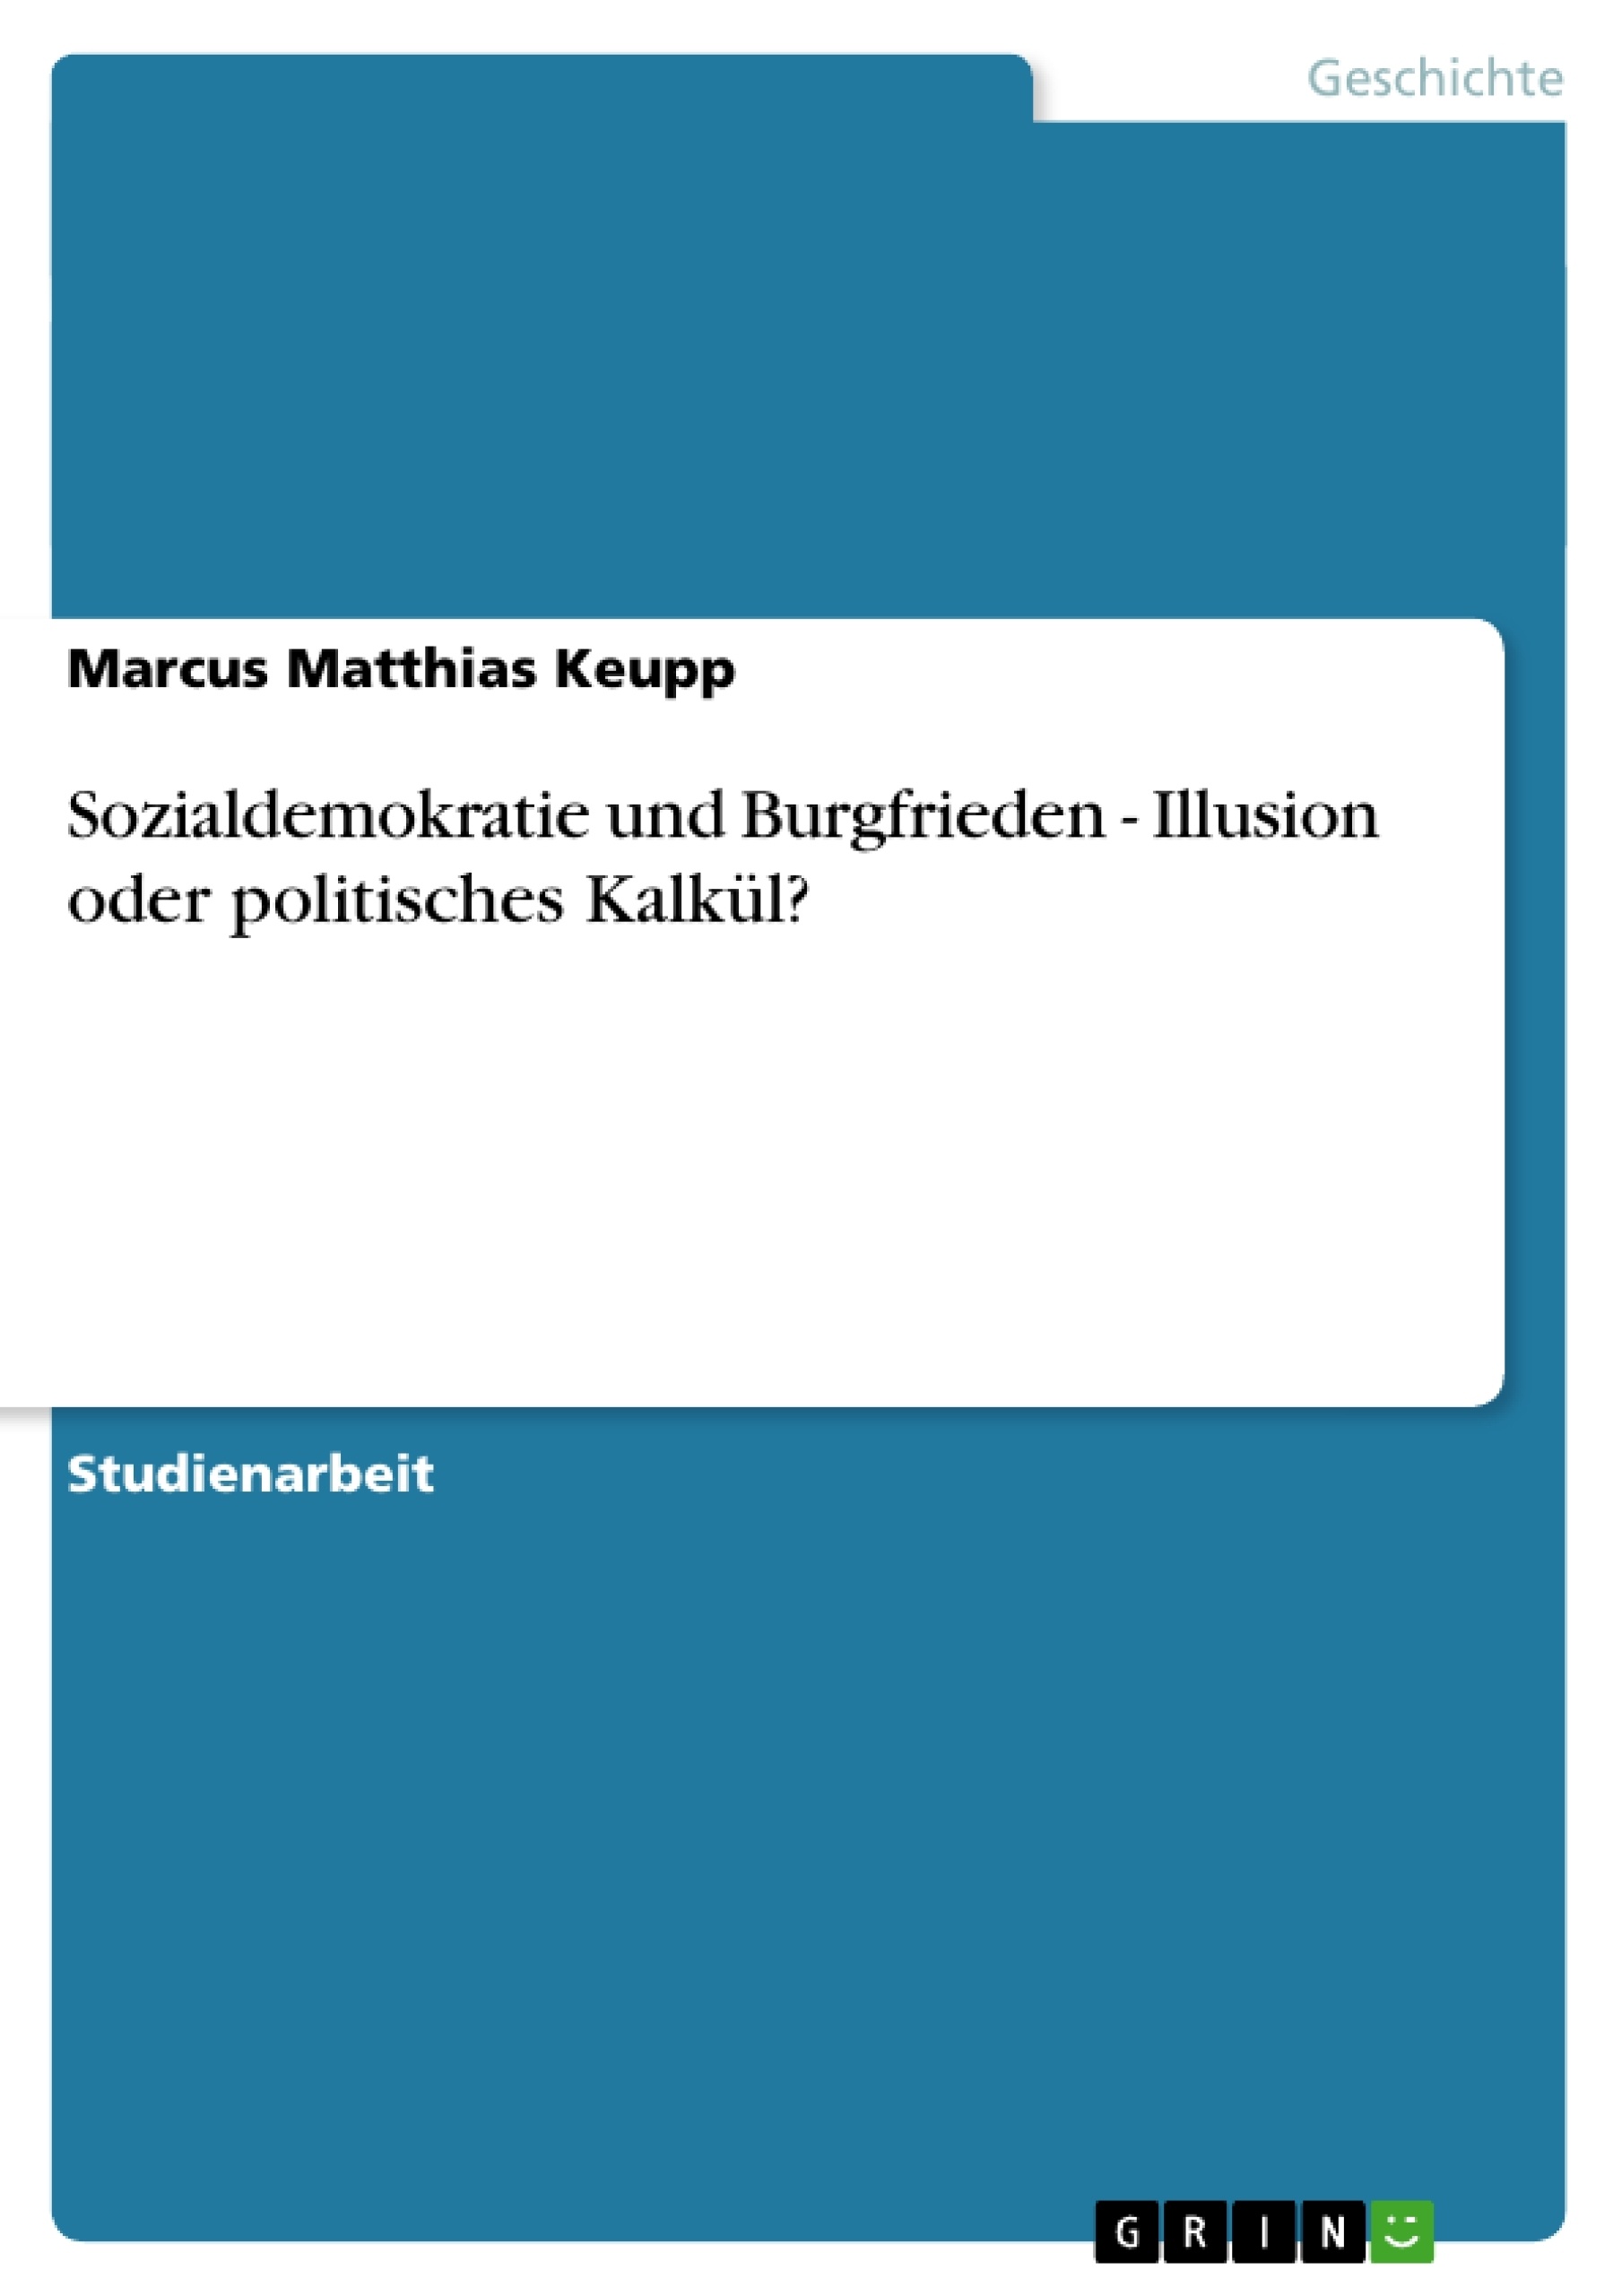 Title: Sozialdemokratie und Burgfrieden - Illusion oder politisches Kalkül?